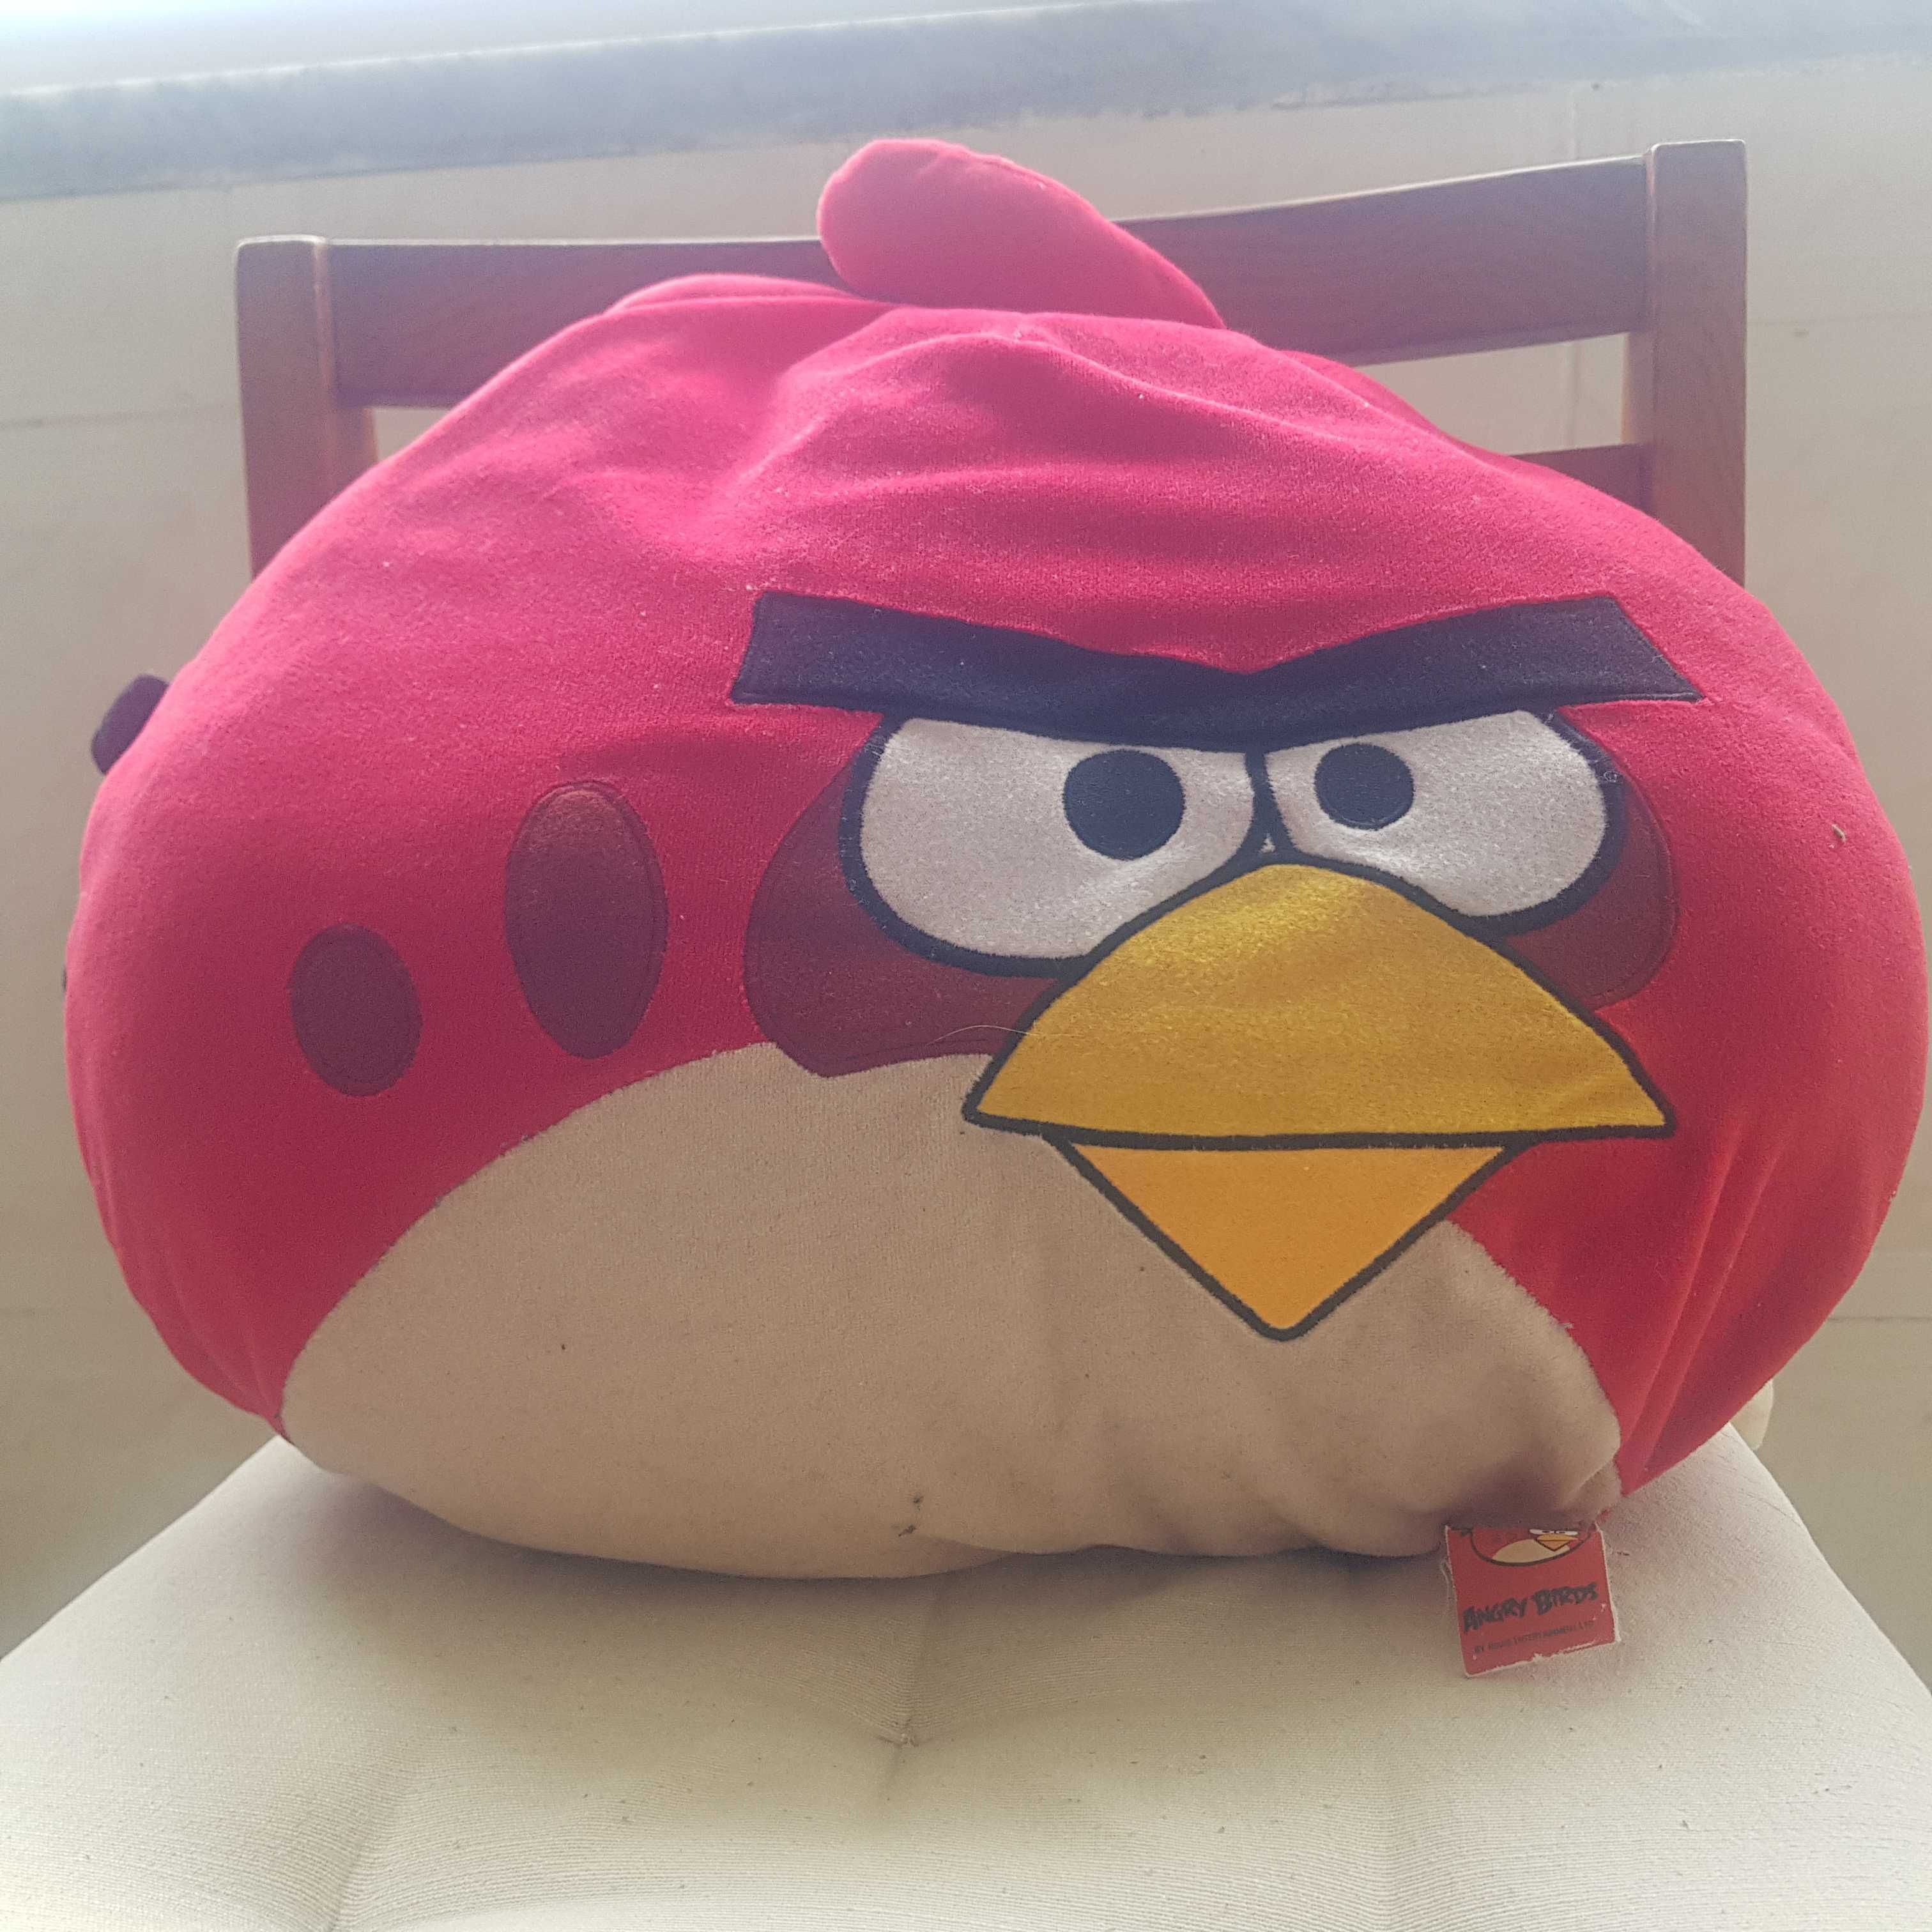 Almofada Oficial vermelha "Angry Birds"